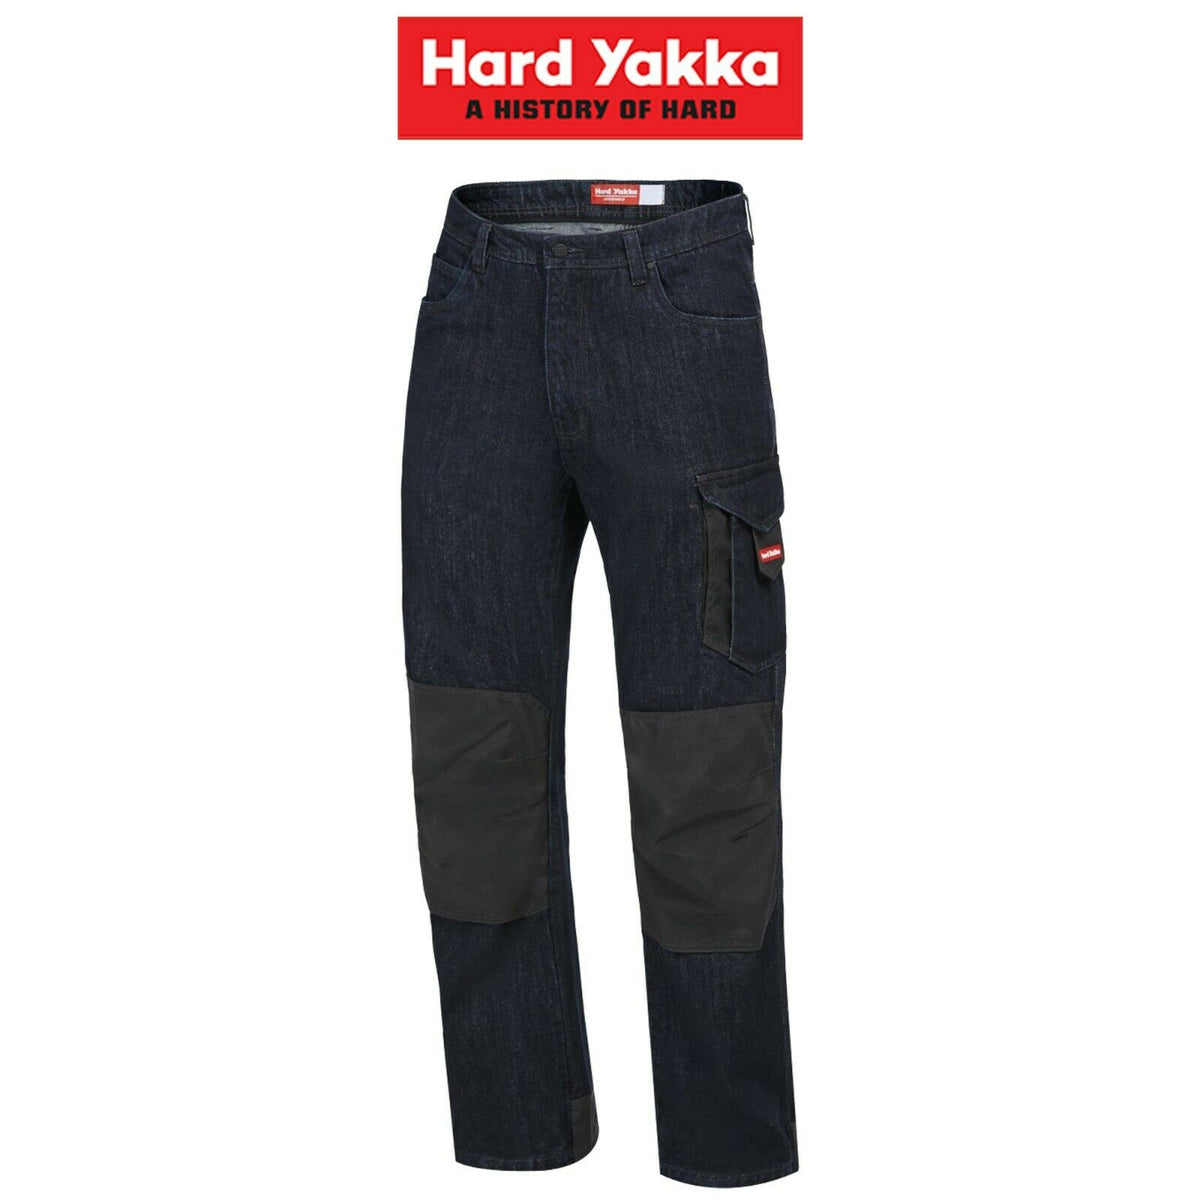 Hard Yakka Legends Denim Work Jeans Cargo Pants Heavy Duty Cordura Y03041